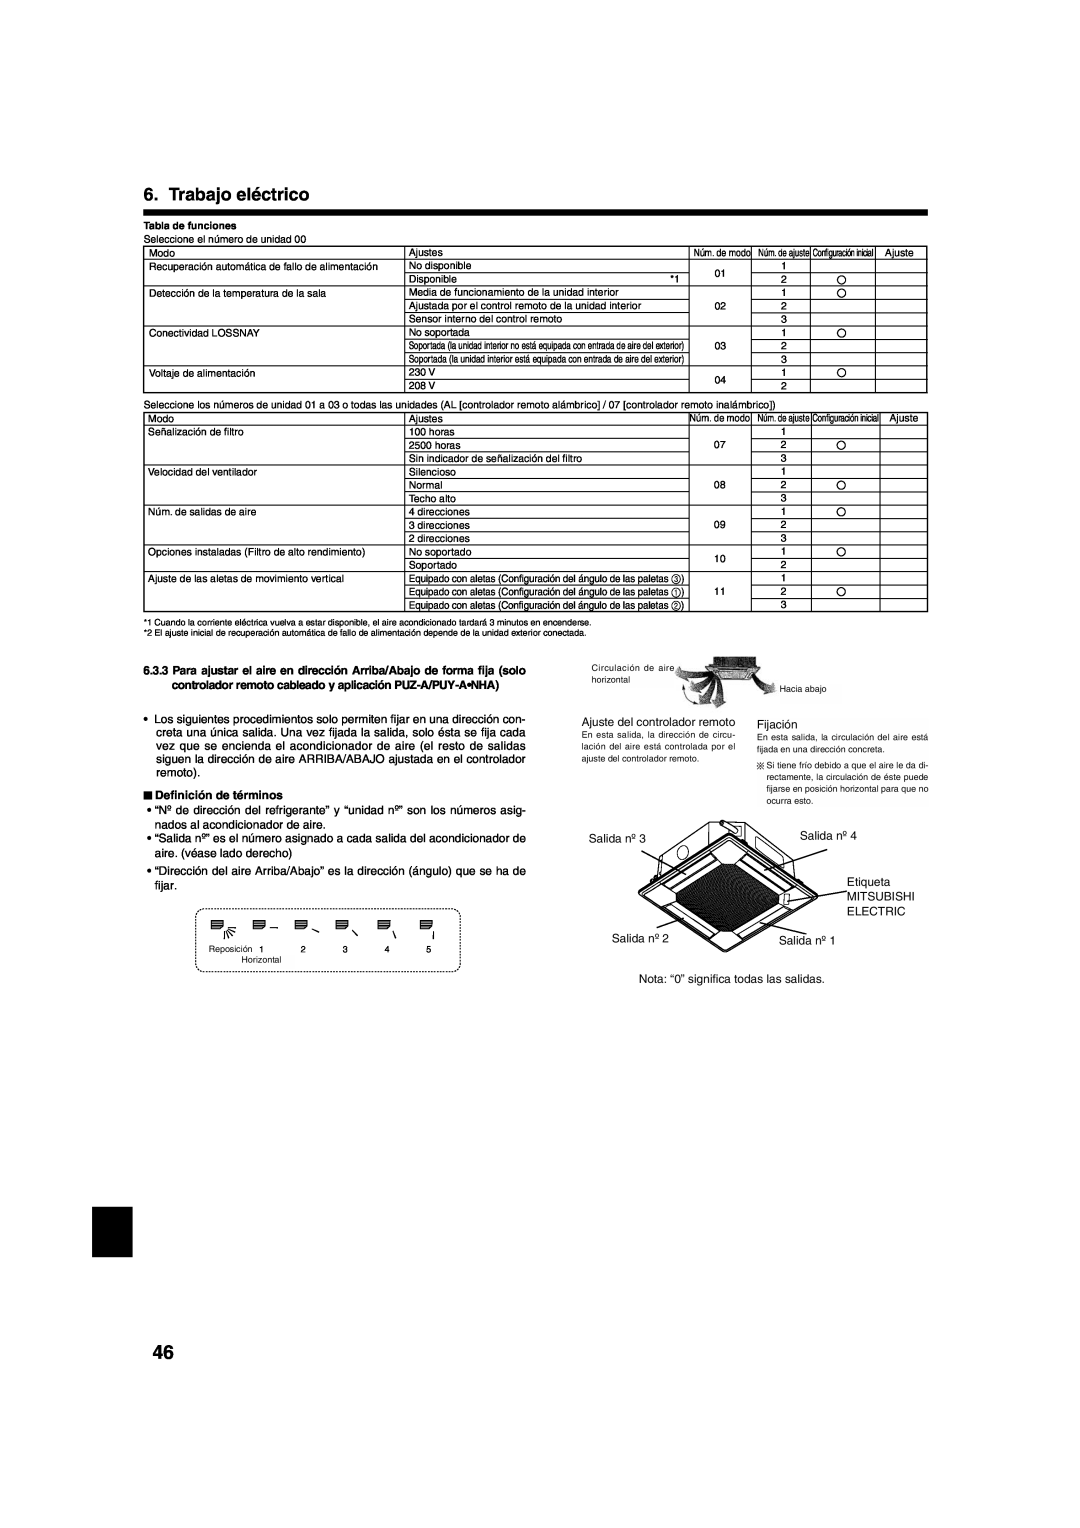 Mitsumi electronic PLA-ABA Trabajo eléctrico, Deﬁnición de términos, Outlet No.4 EtiquetaMITSUBISHI, label 